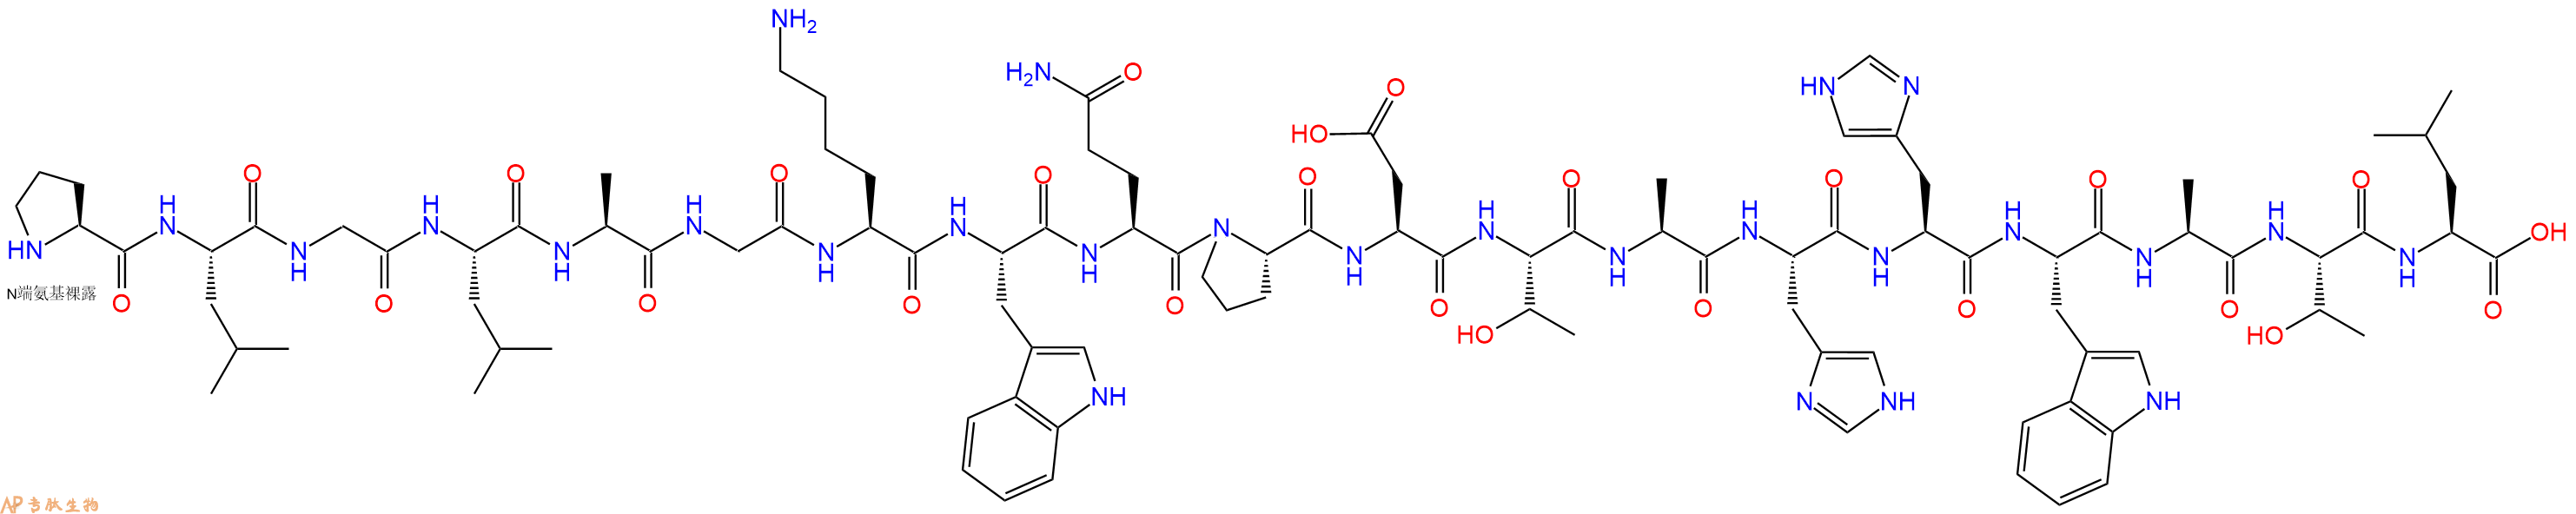 专肽生物产品十九肽PLGLAGKWQPDTAHHWATL